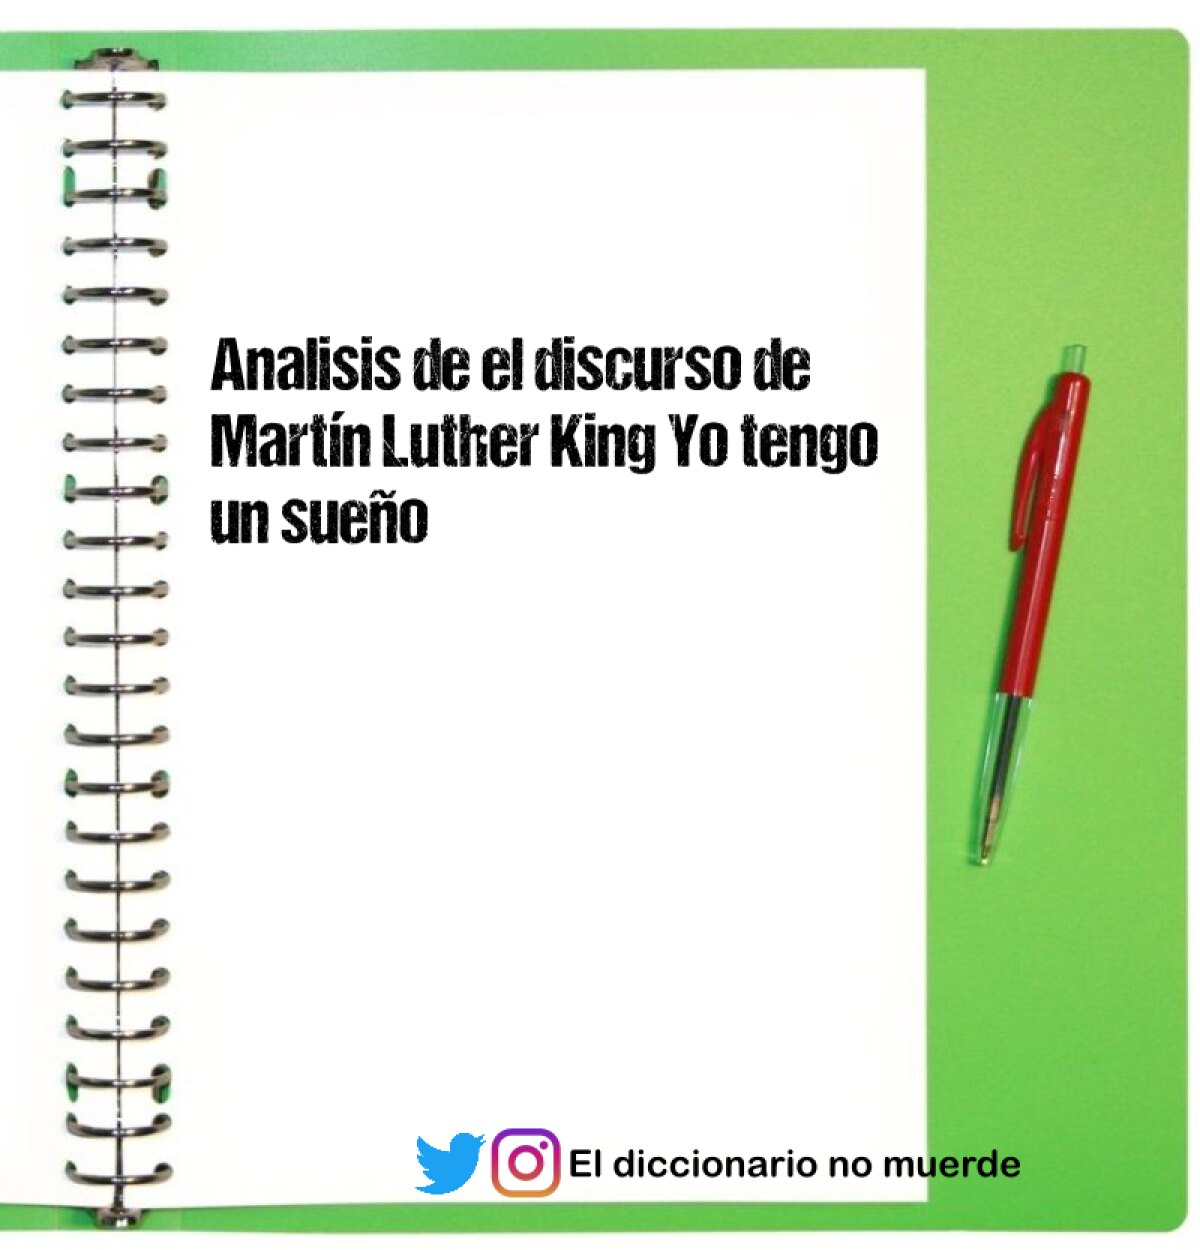 Analisis de el discurso de Martín Luther King Yo tengo un sueño